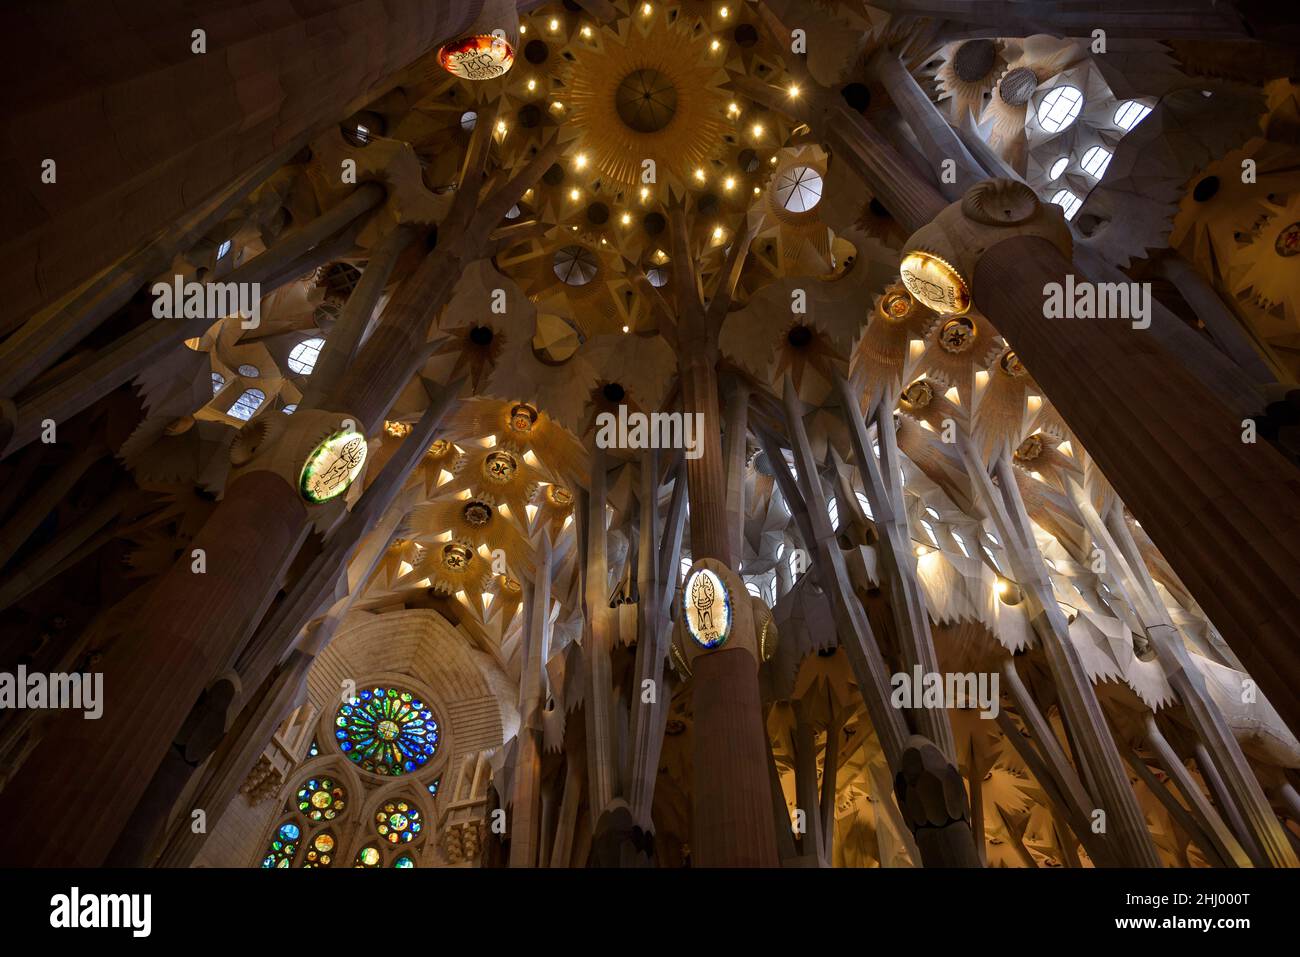 Traversée de la basilique de la Sagrada Familia (Barcelone, Catalogne, Espagne) ESP: Crucero de la Basílica de la Sagrada Familia (Barcelone, Catalogne, Espagne) Banque D'Images